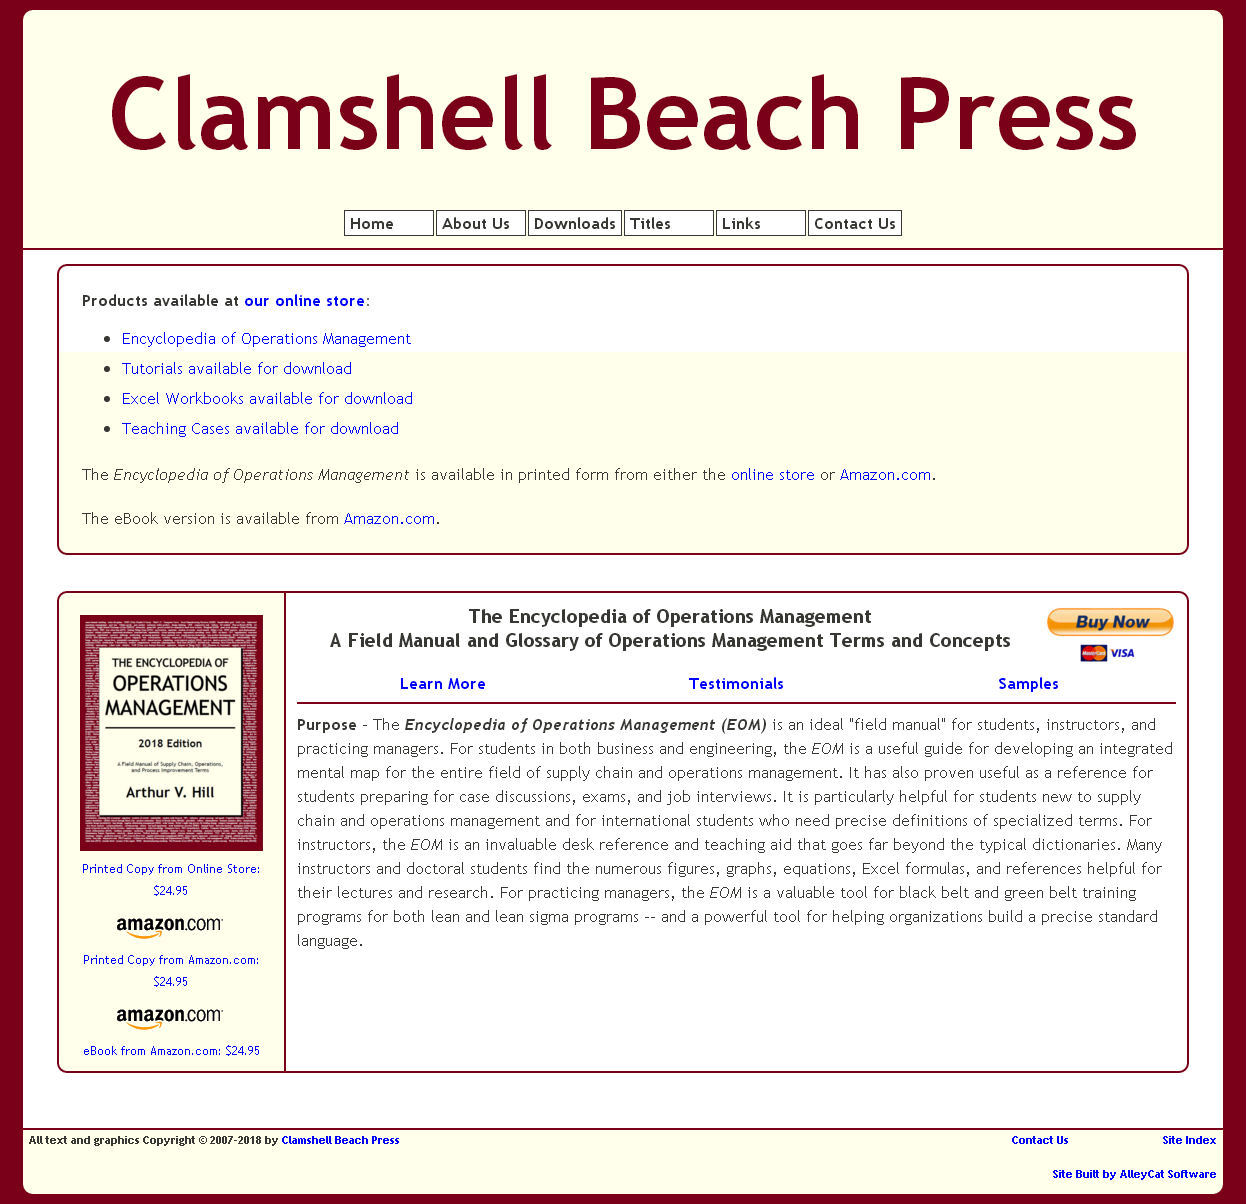 Clamshell Beach Press